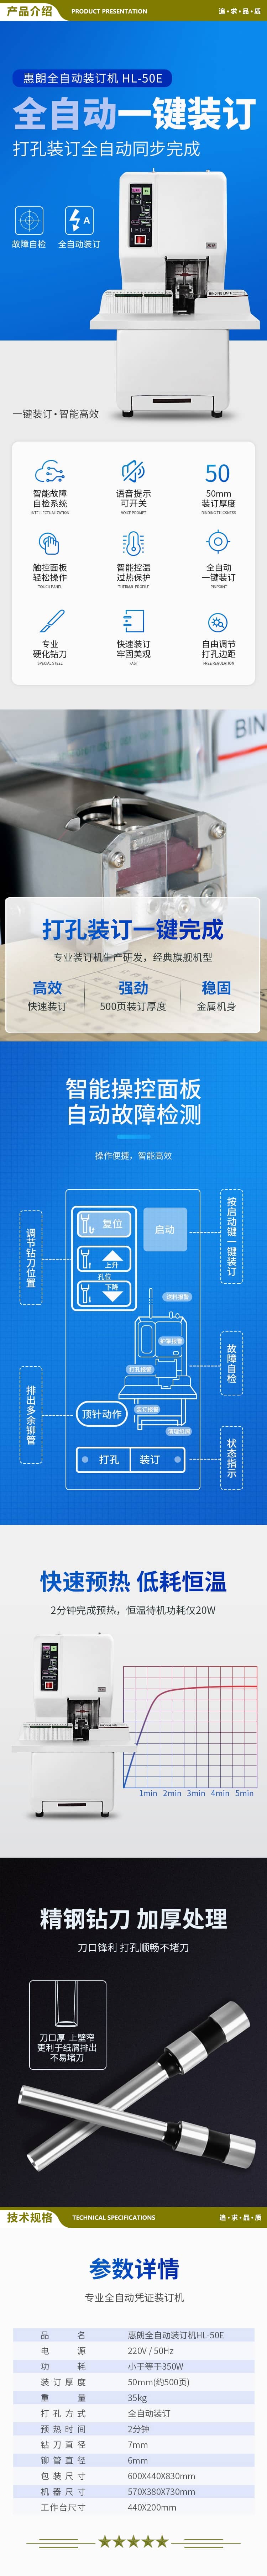 惠朗 huilang 50E 全自动财务凭证装订机 一键装订 50mm  2.jpg